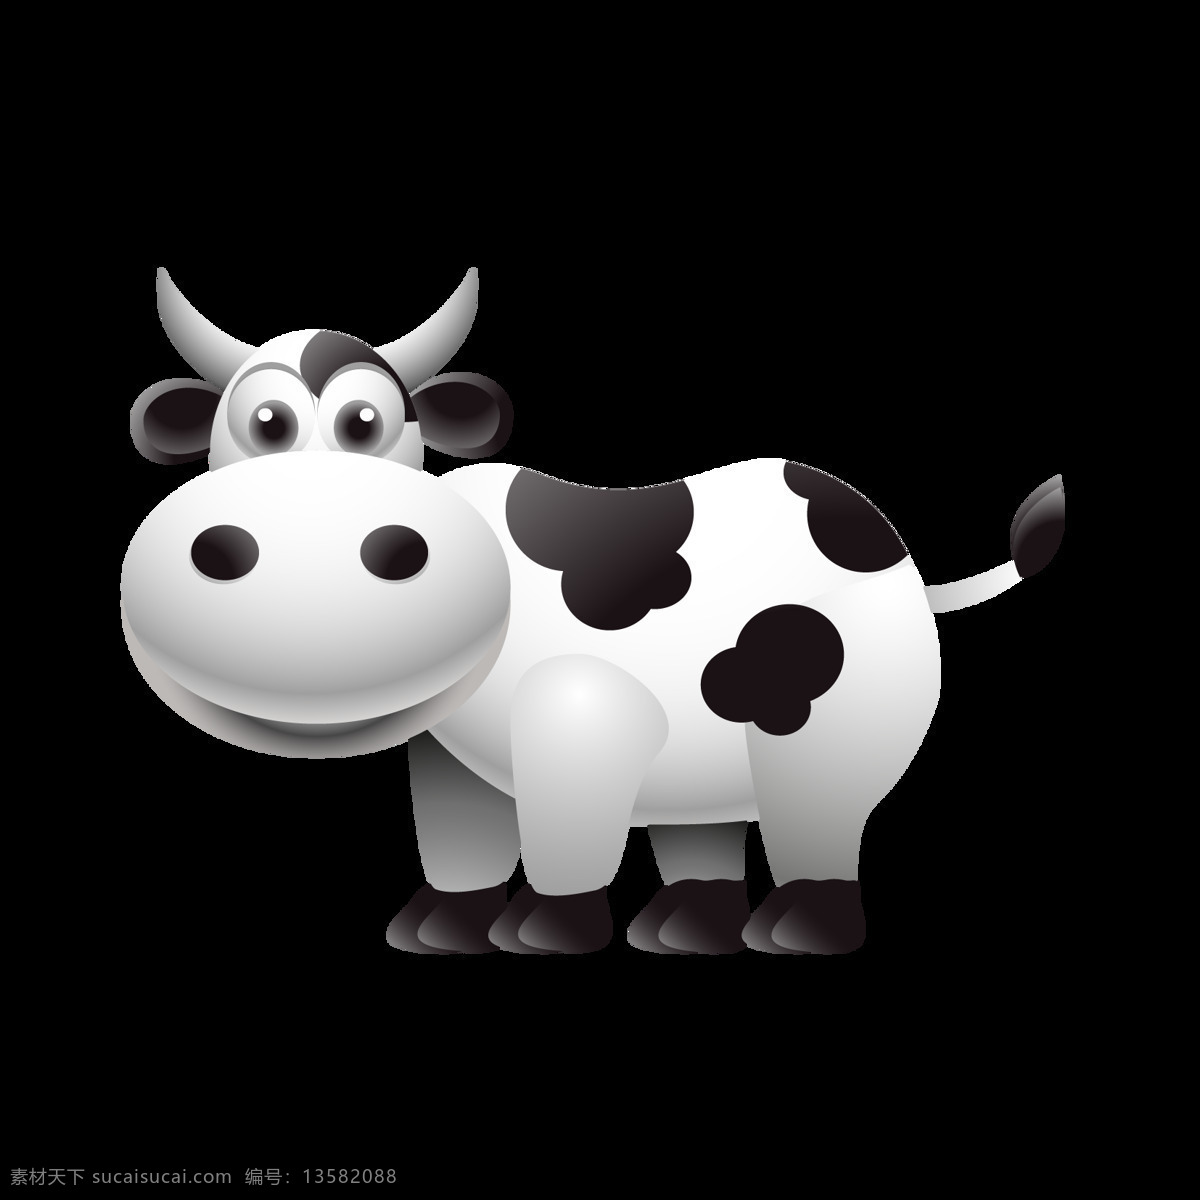 黑白 卡通 奶牛 可爱 底纹边框 抽象底纹